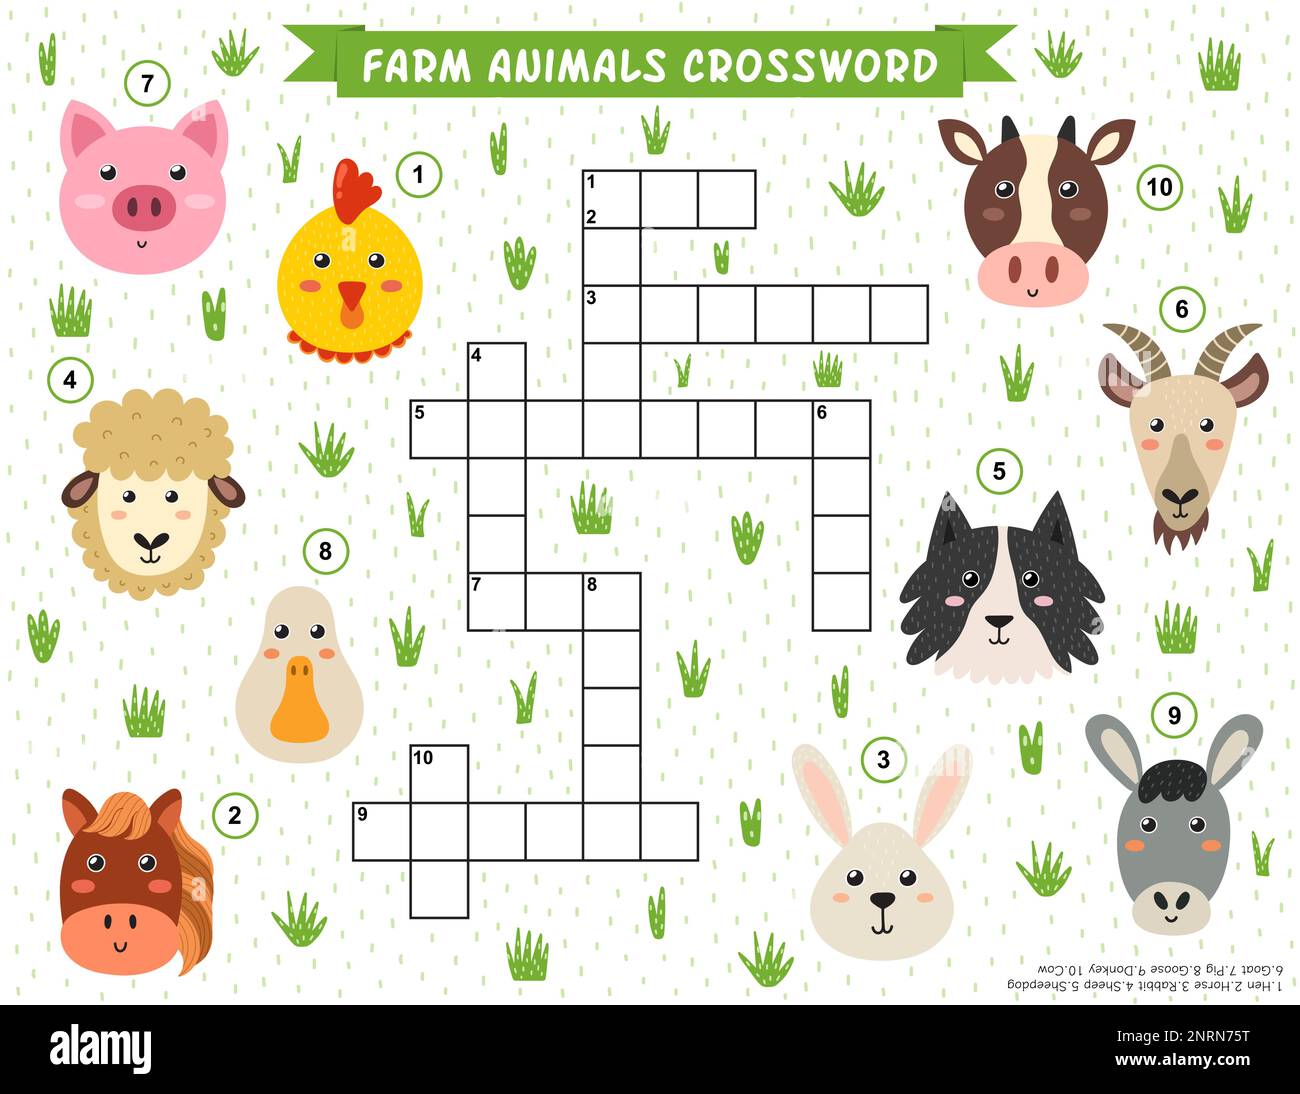 Bauernhoftiere Kreuzworträtsel für Kinder. Pädagogisches Spiel mit niedlichen Bauernfiguren Stock Vektor